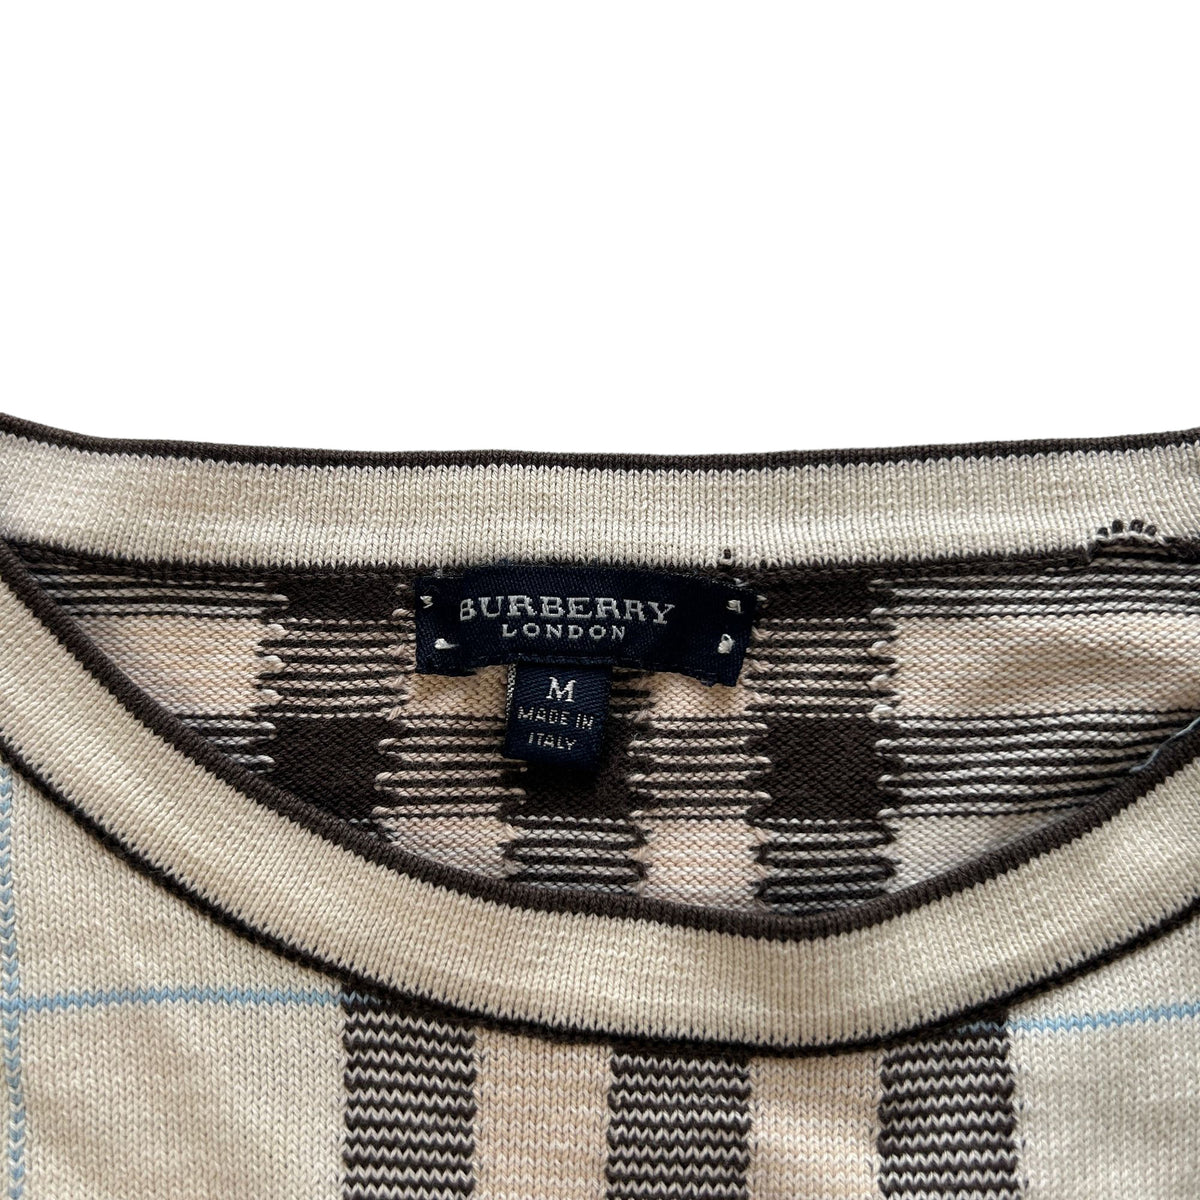 Vintage Burberry Nova Check Knit Jumper Size S